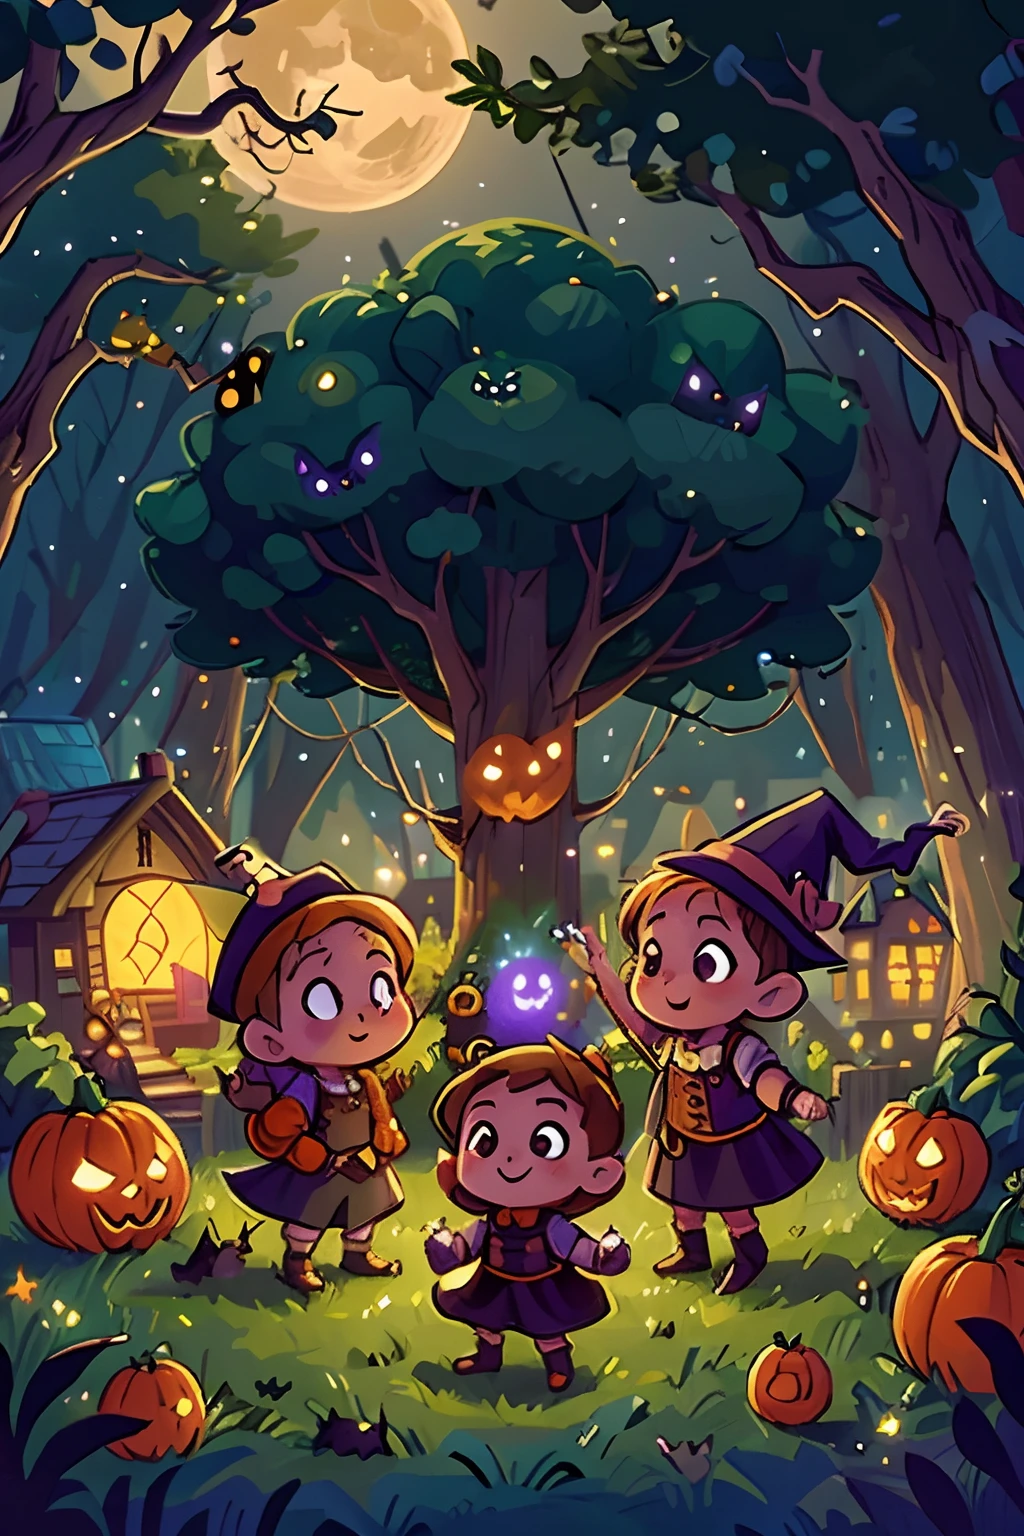 매우 귀여운 어린 마녀 그룹과 할로윈 호박 주위에서 춤추는 귀여운 요정들을 그려보세요.. 별이 빛나는 밤, 거대한 보름달, 행복한 캐릭터. 밤에 작은 마을의 불빛, 박쥐와 올빼미와 나무